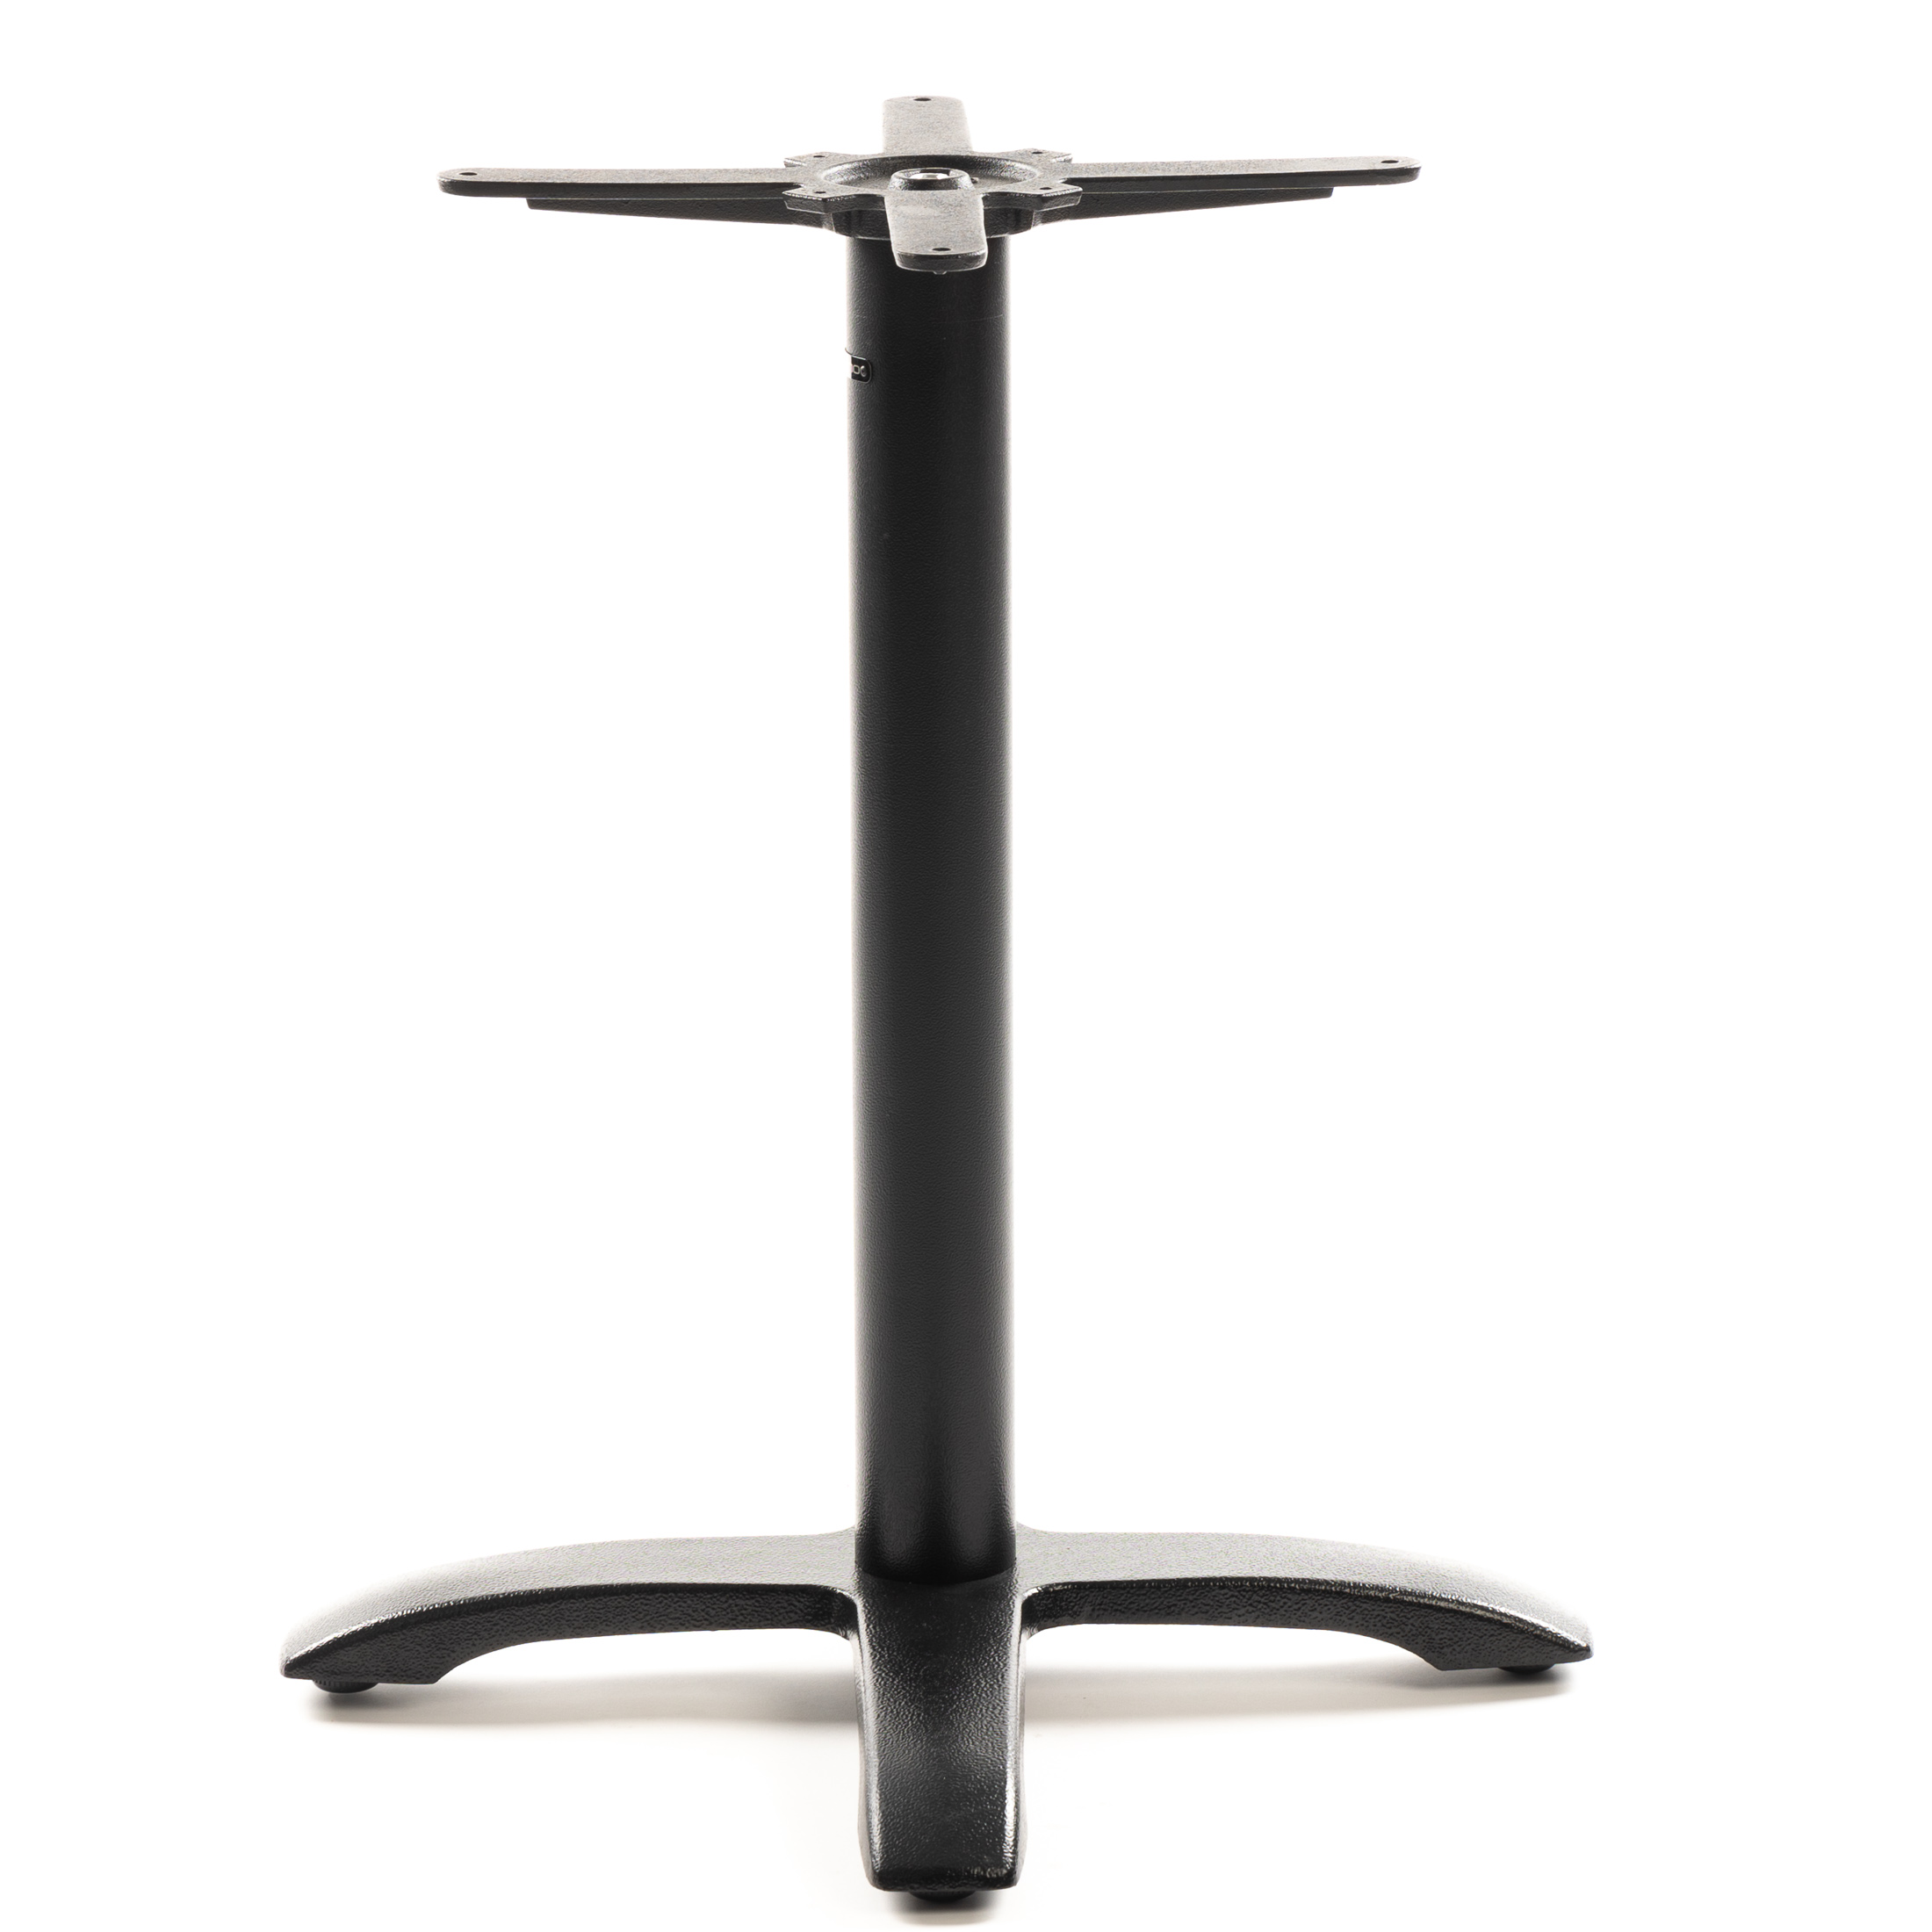 Tischgestell PJ7602 (Tischbein) aus Gusseisen, pulverbeschichtet schwarz, 4-zehiger Standfuß